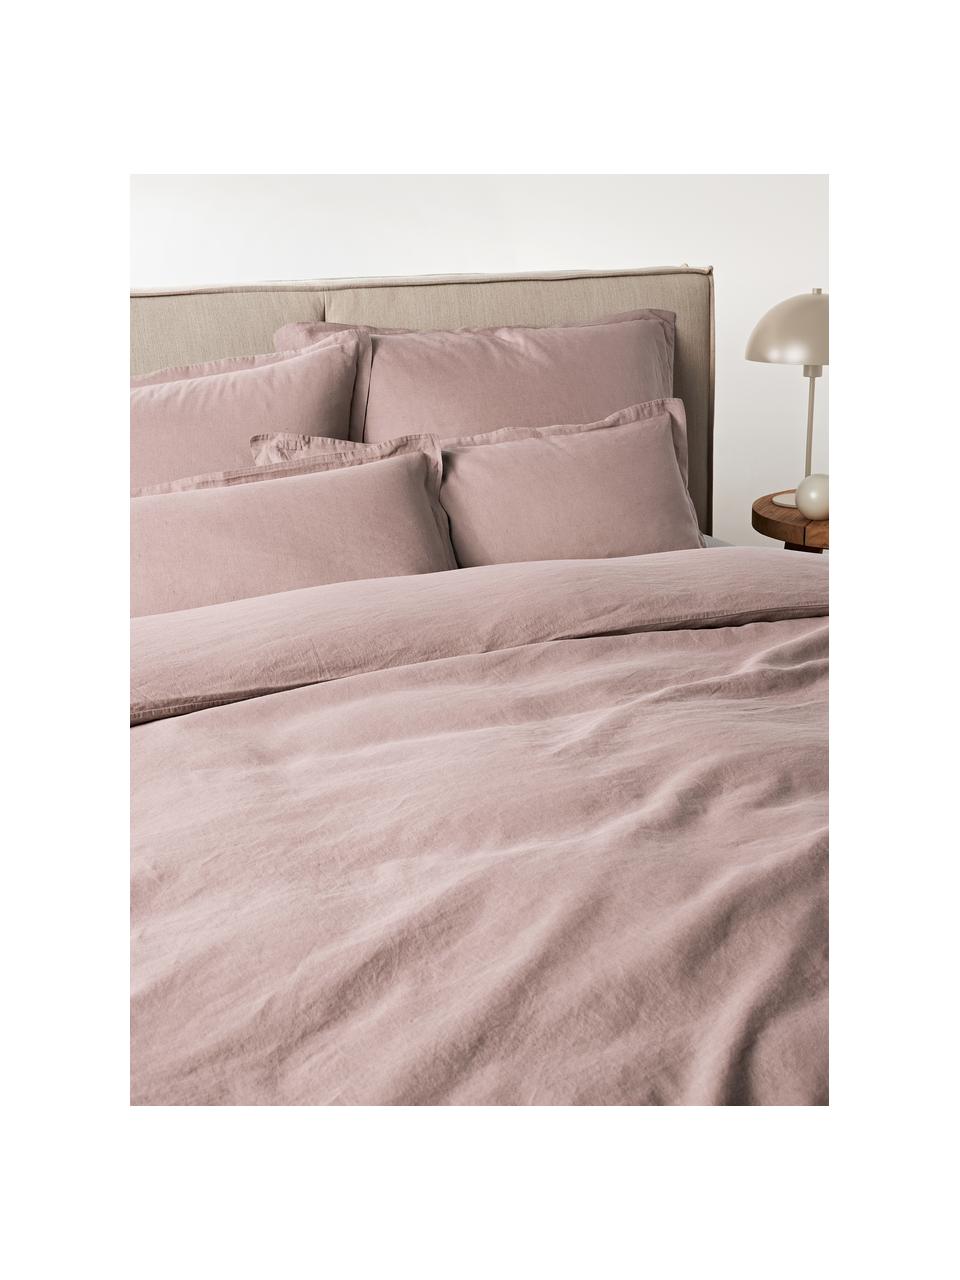 Biancheria da letto in lino rosa cipria Nature, Mezzo lino
(52% lino, 48% cotone)

Densità dei fili 108 TC, qualità standard

Il mezzo lino ha un'sensazione naturale e un naturale aspetto sgualcito, che viene esaltato dall'effetto stonewash. Assorbe fino al 35% di umidità, si asciuga molto rapidamente e ha un effetto piacevolmente rinfrescante nelle notti d'estate. L'elevata resistenza allo strappo rende il mezzo lino resistente all'abrasione e all'usura, Rosa cipria, 200 x 200 cm + 2 federe 80 x 80 cm